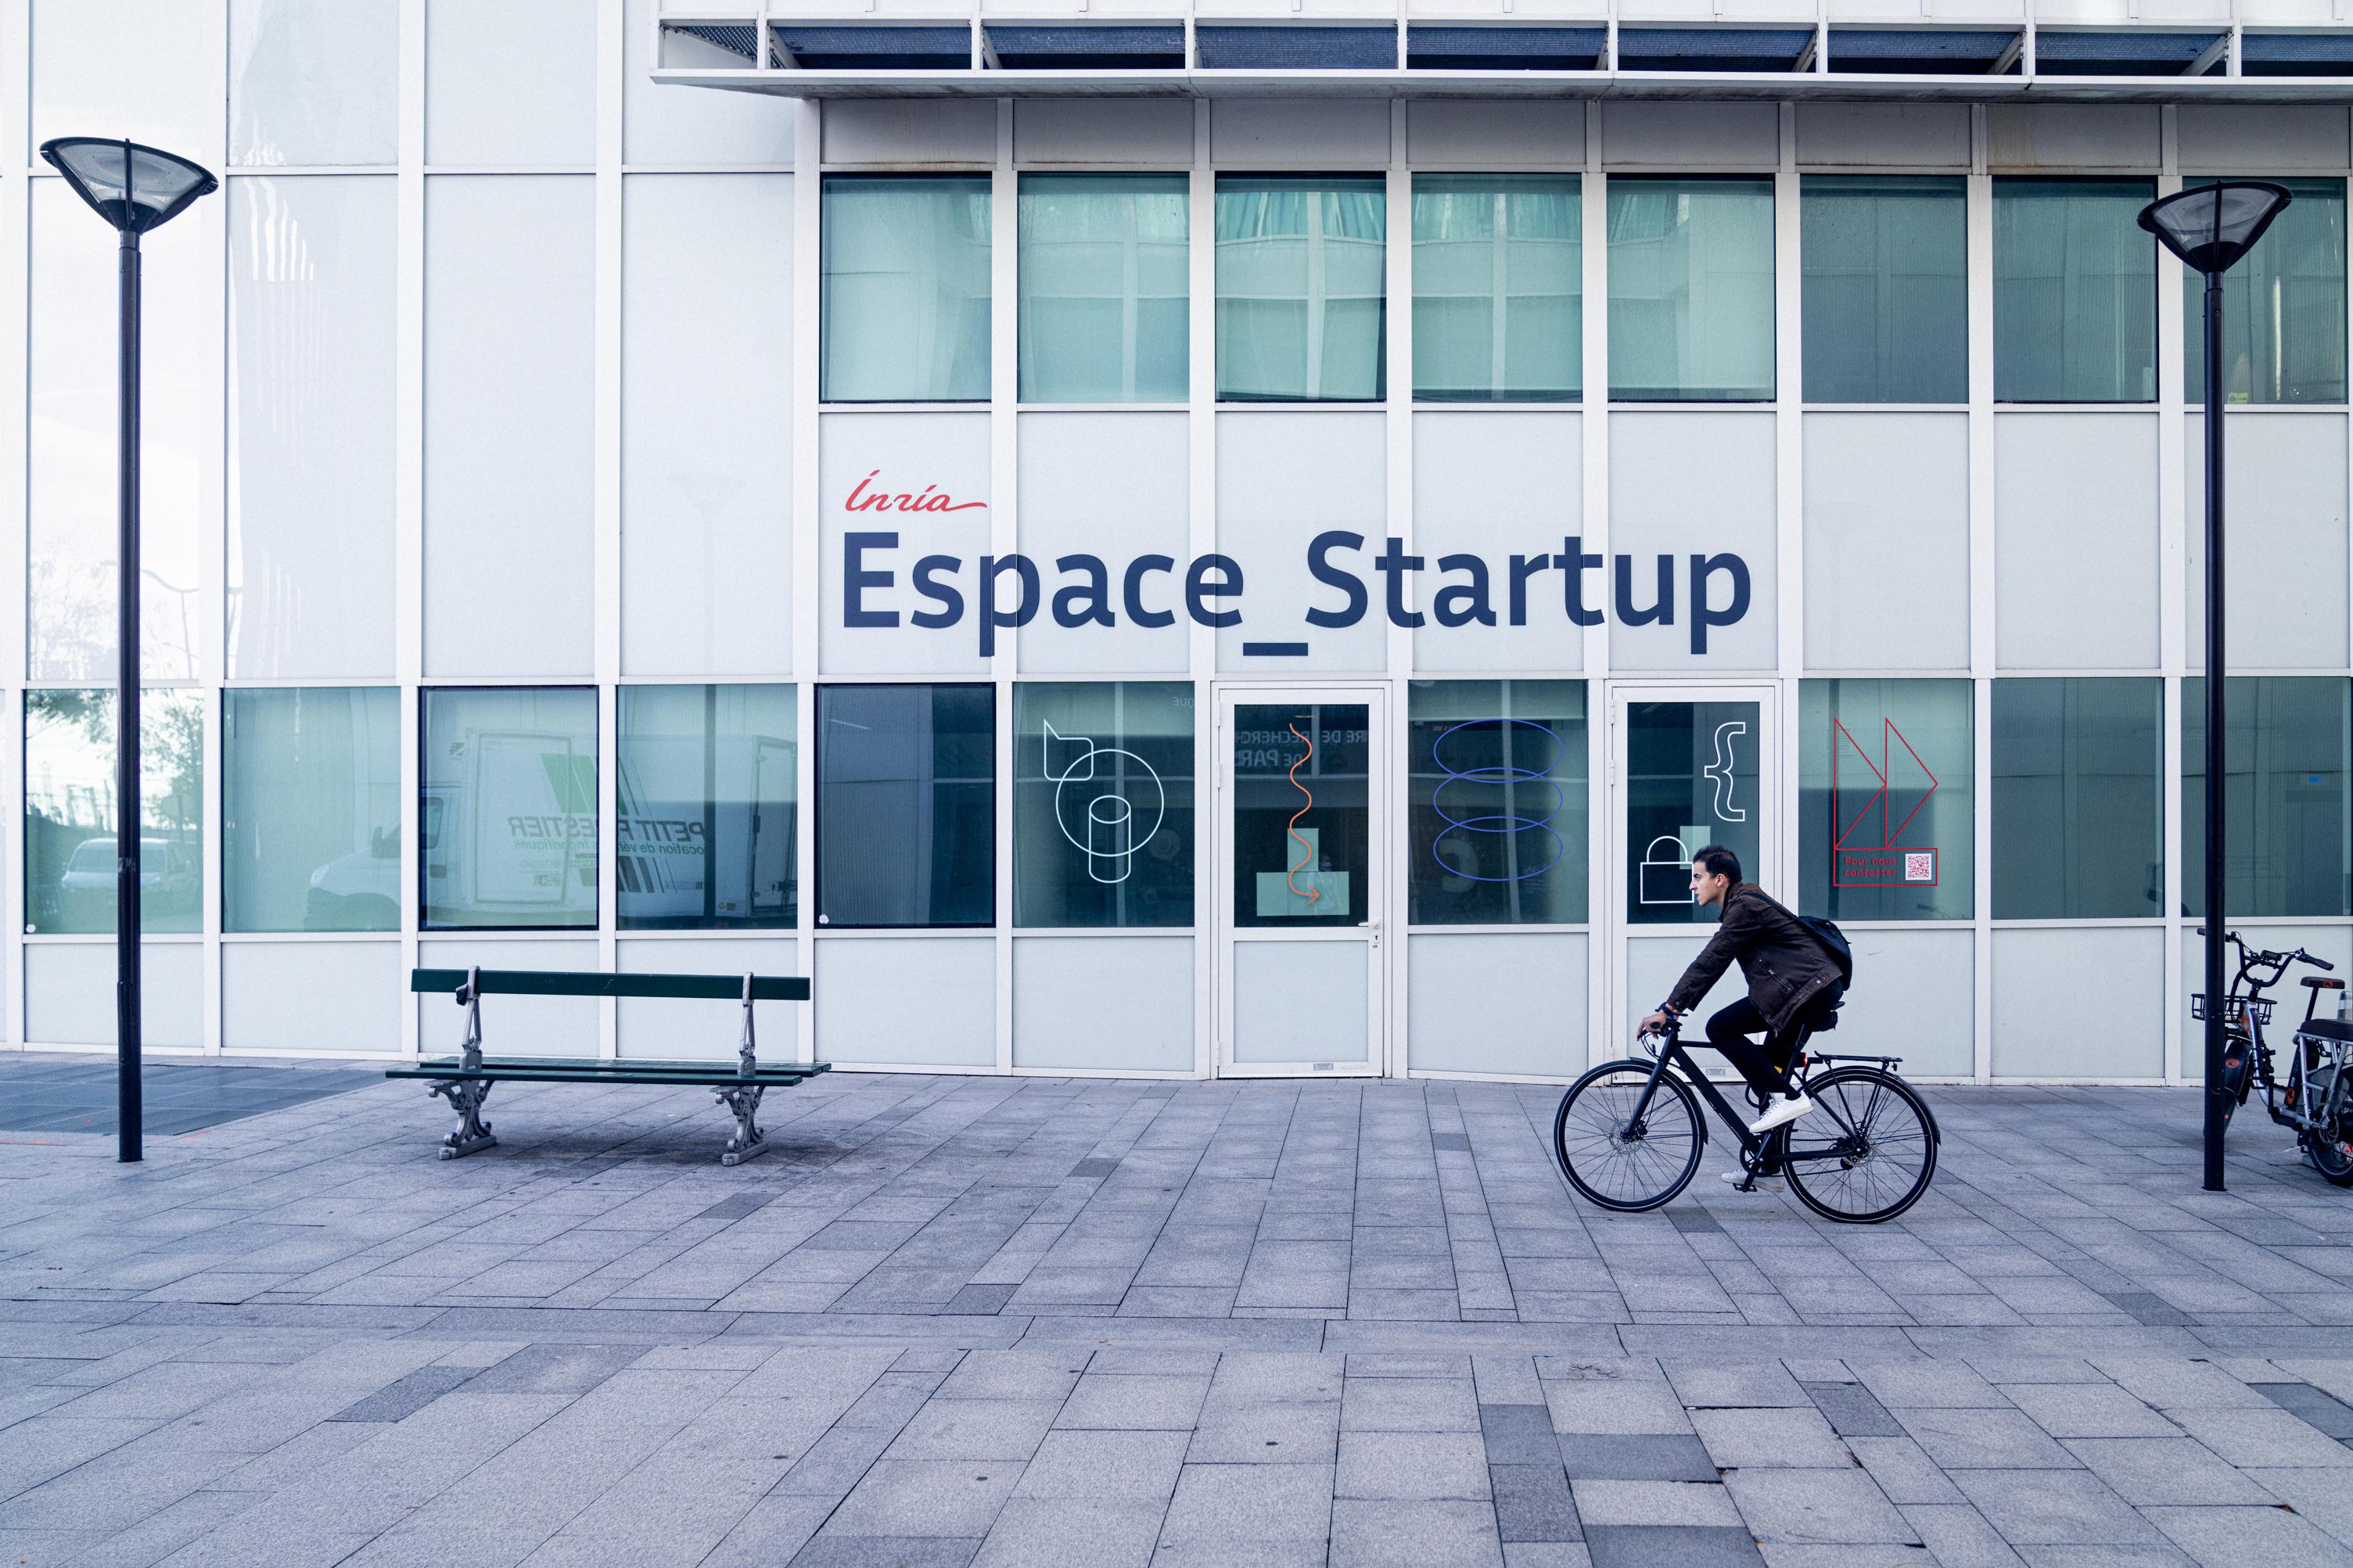 Façade des bureaux de l'Espace_Startup du centre de Paris